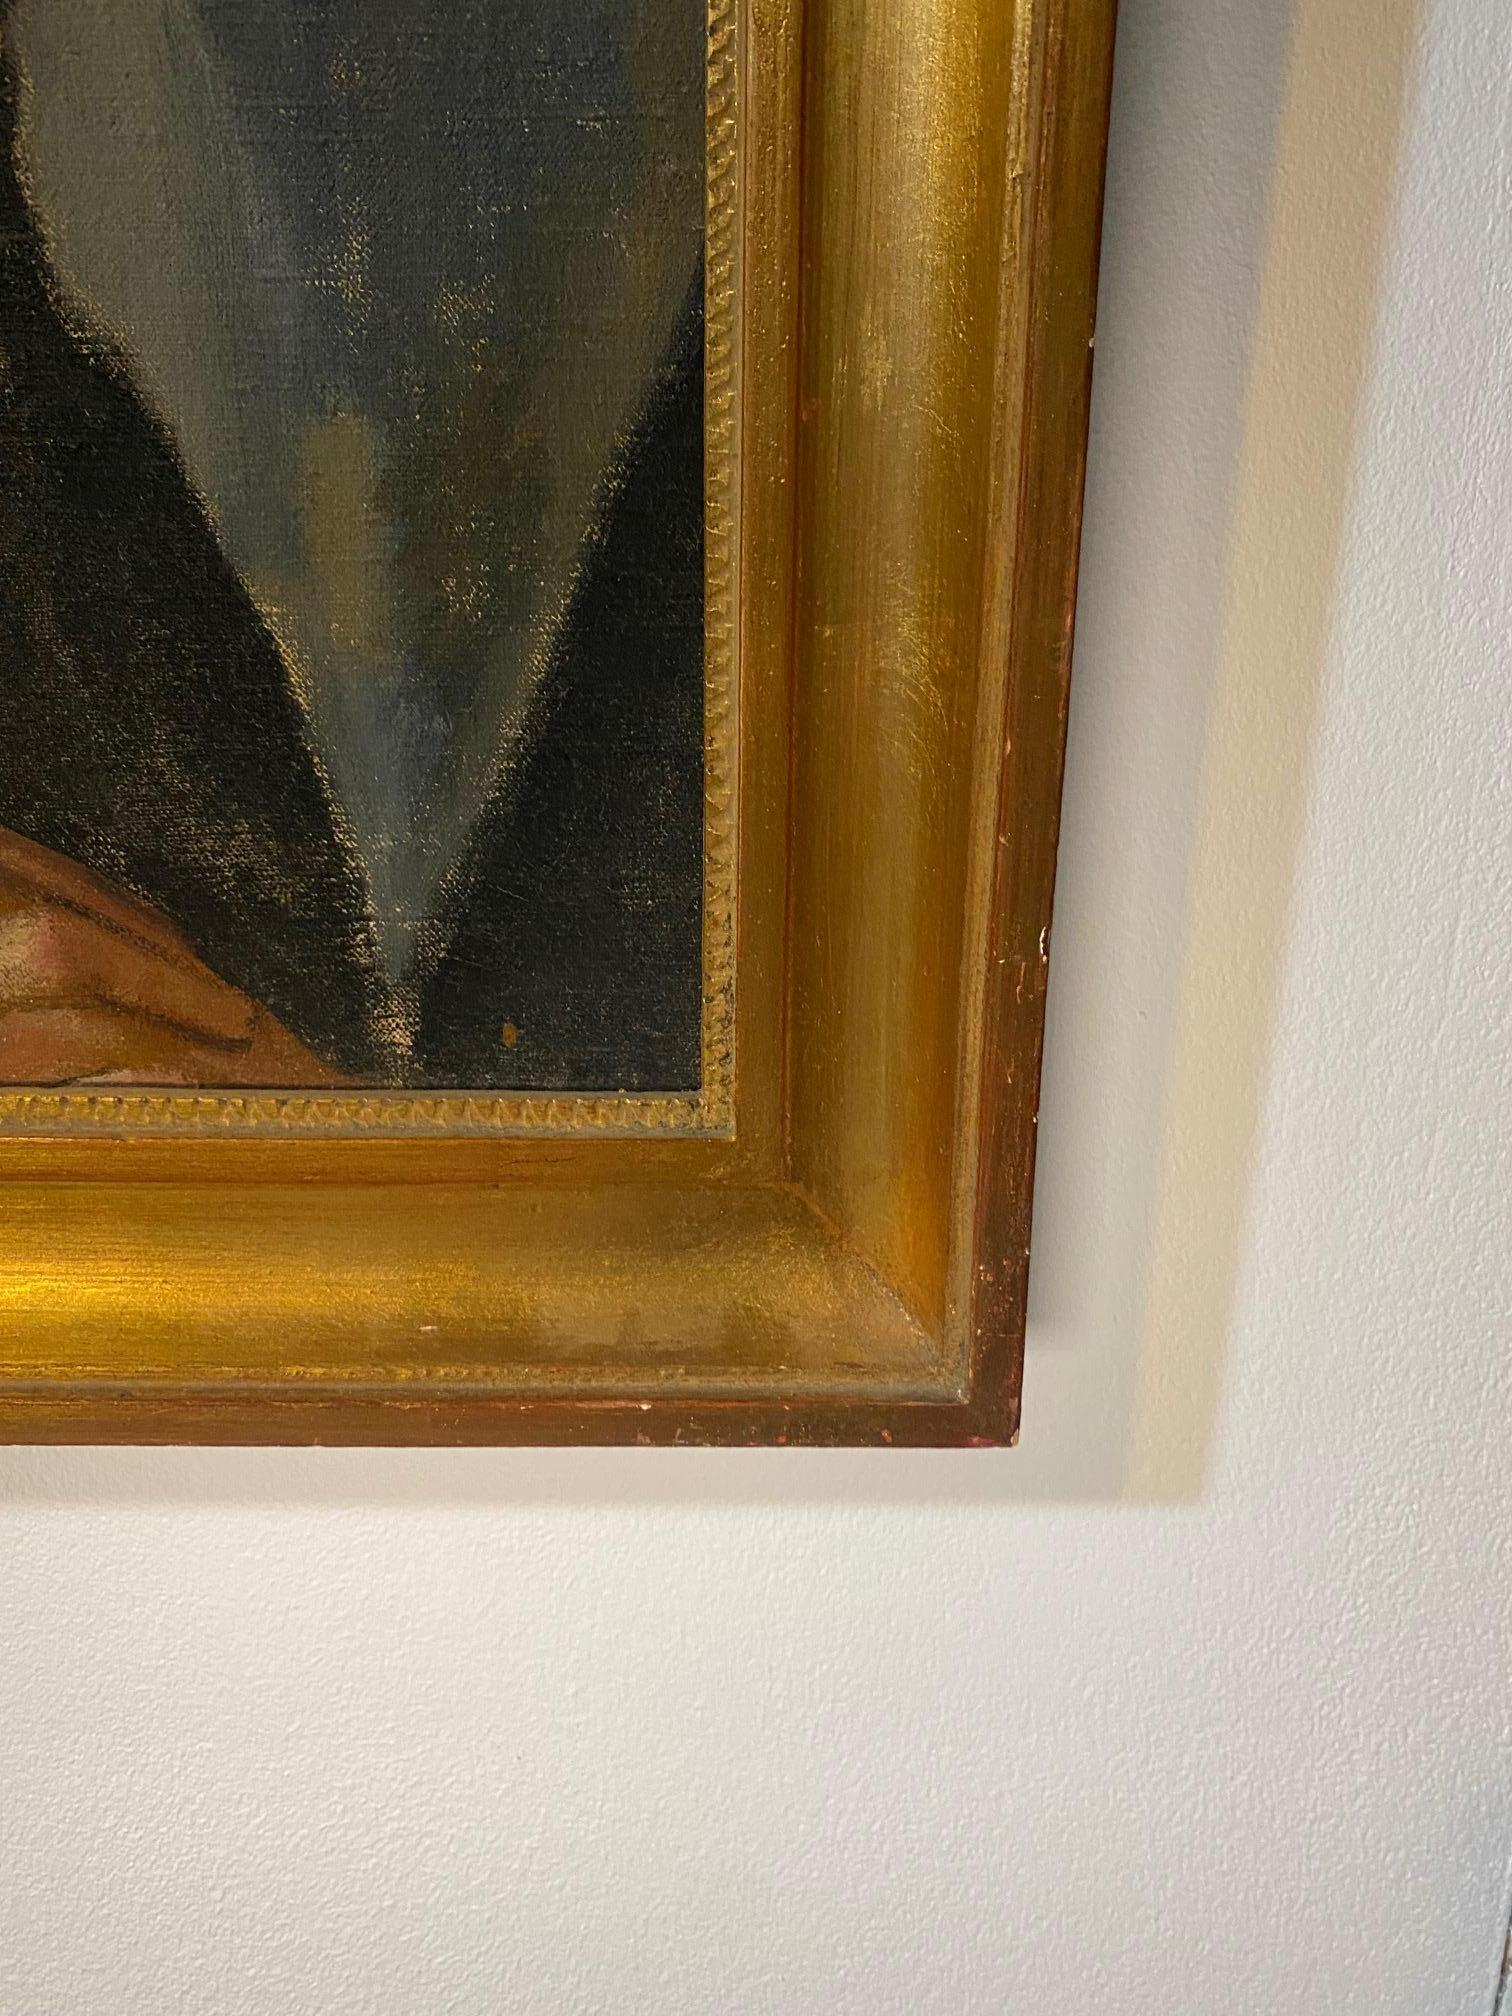 Woman portrait by RV. Kopecek - Oil on canvas 53x63 cm 1